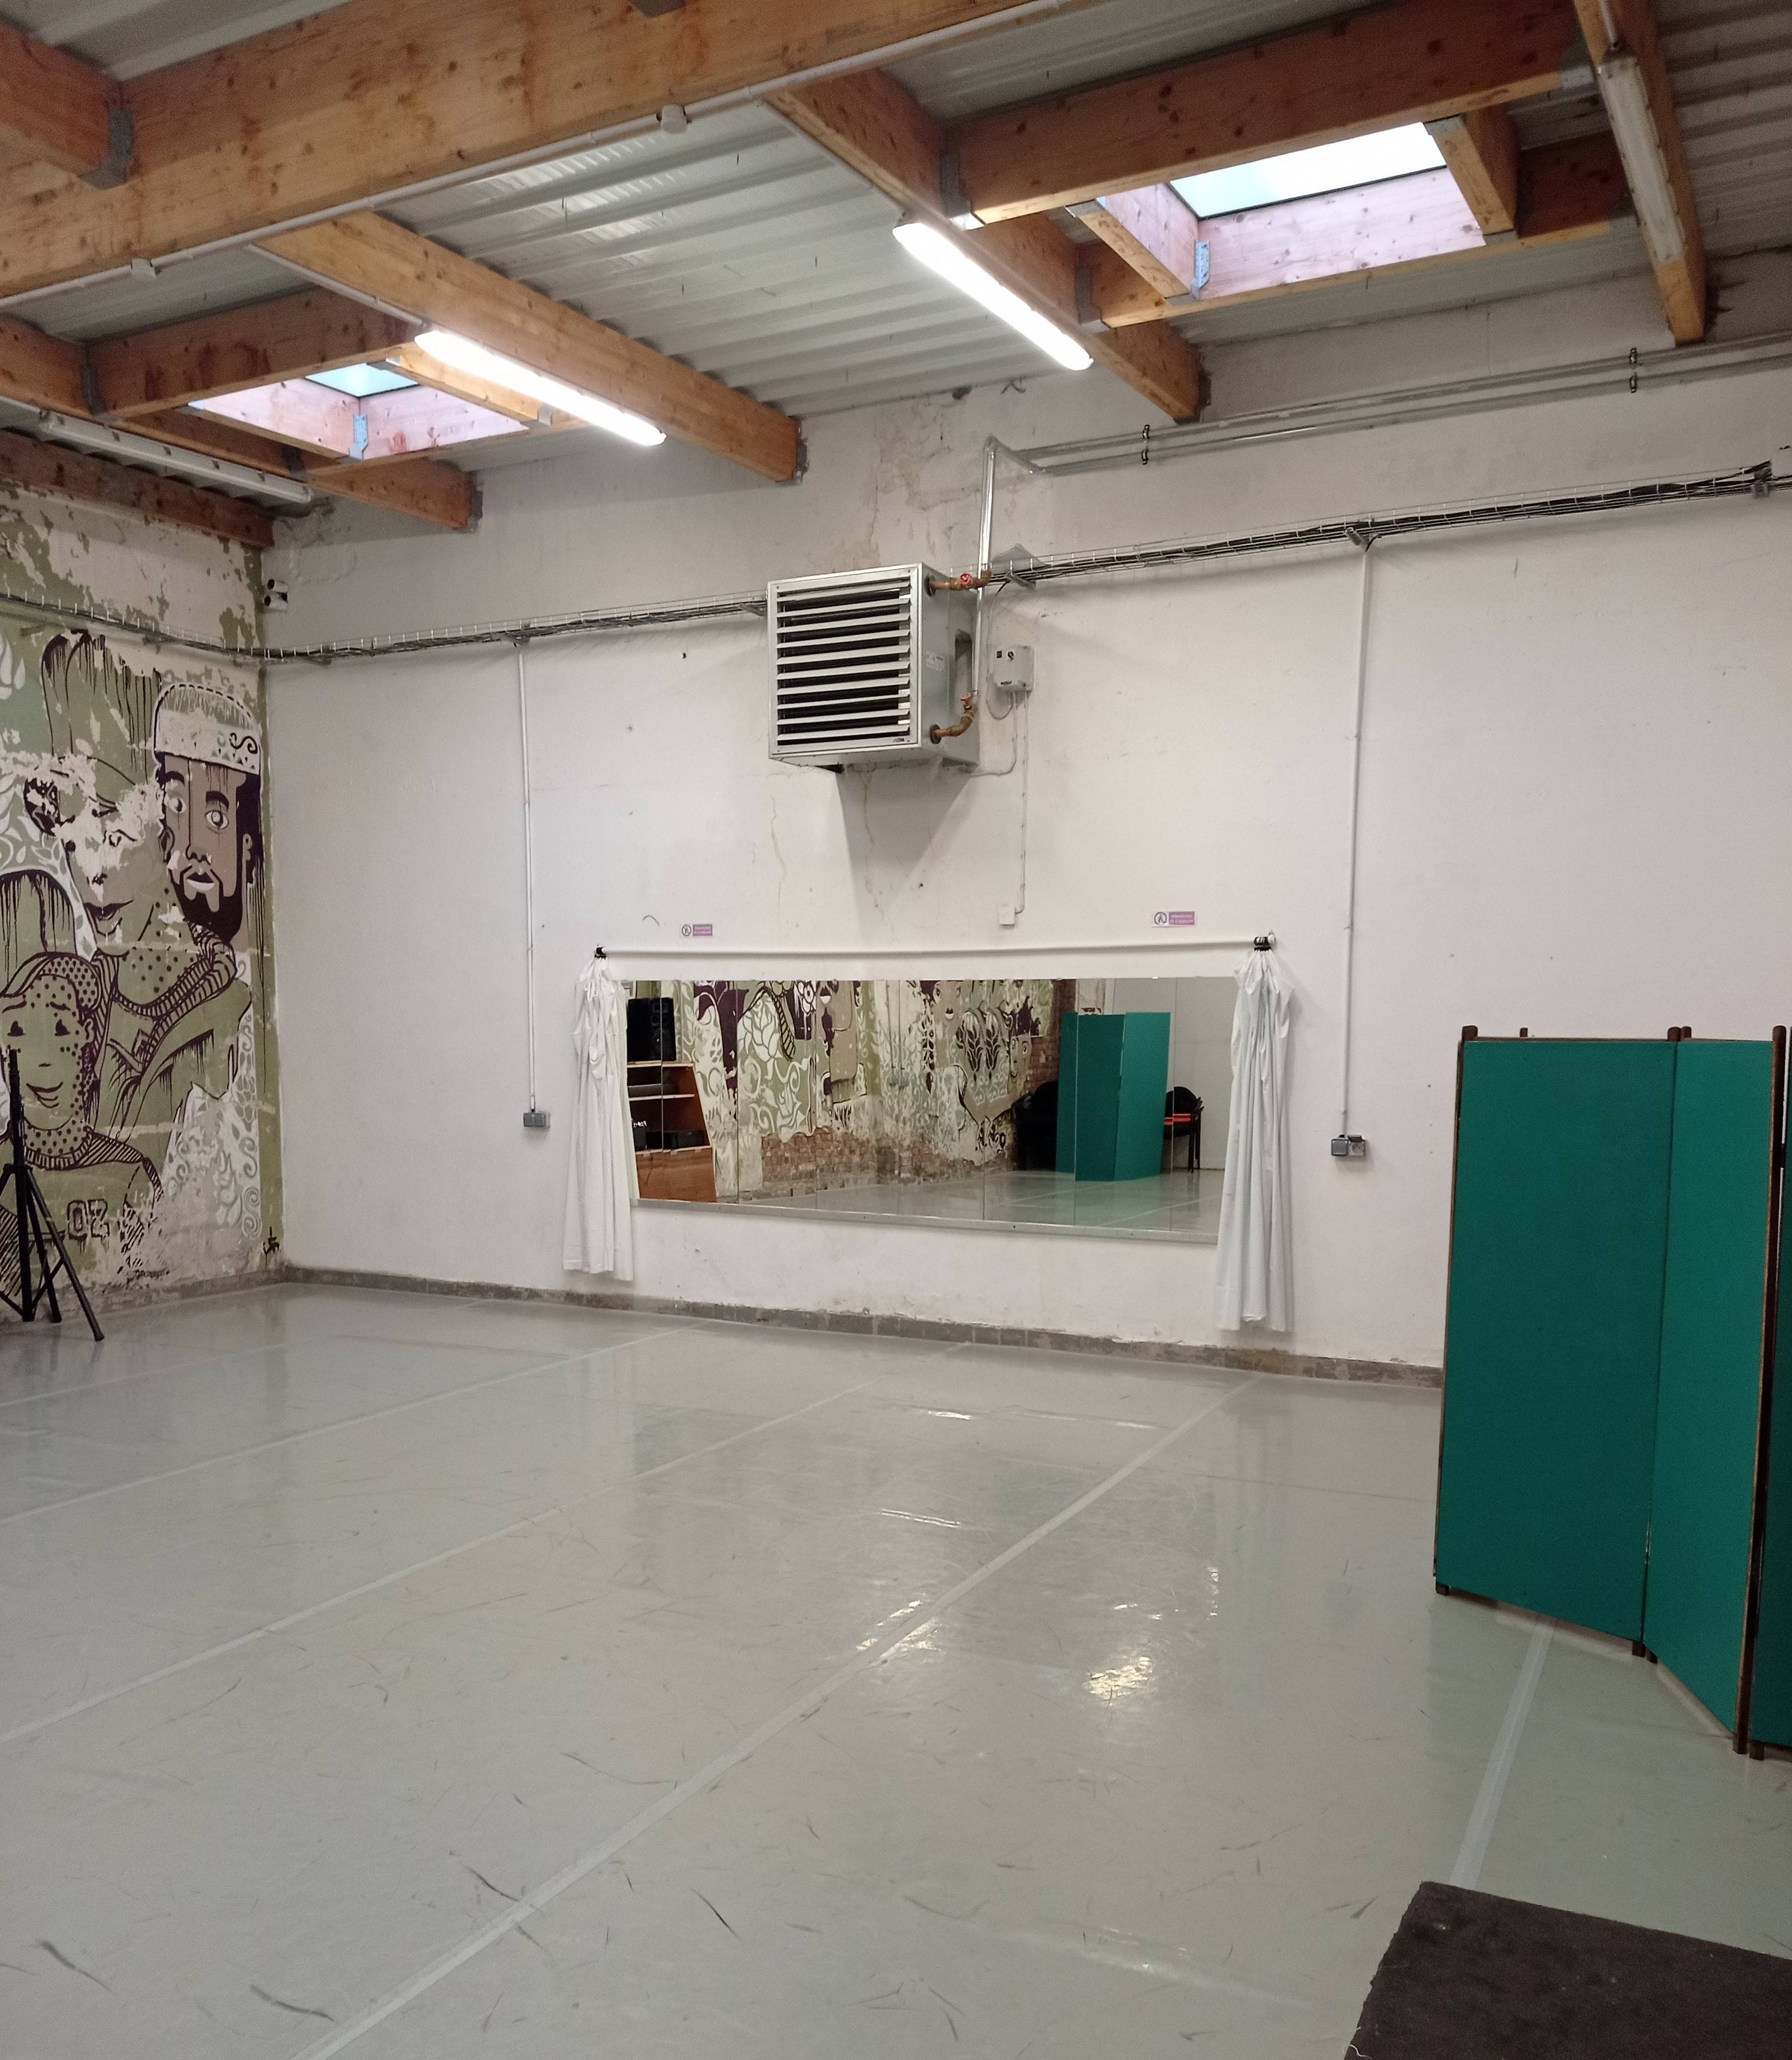  Espace studio de danse et pratiques de bien-être des Ateliers Jouret